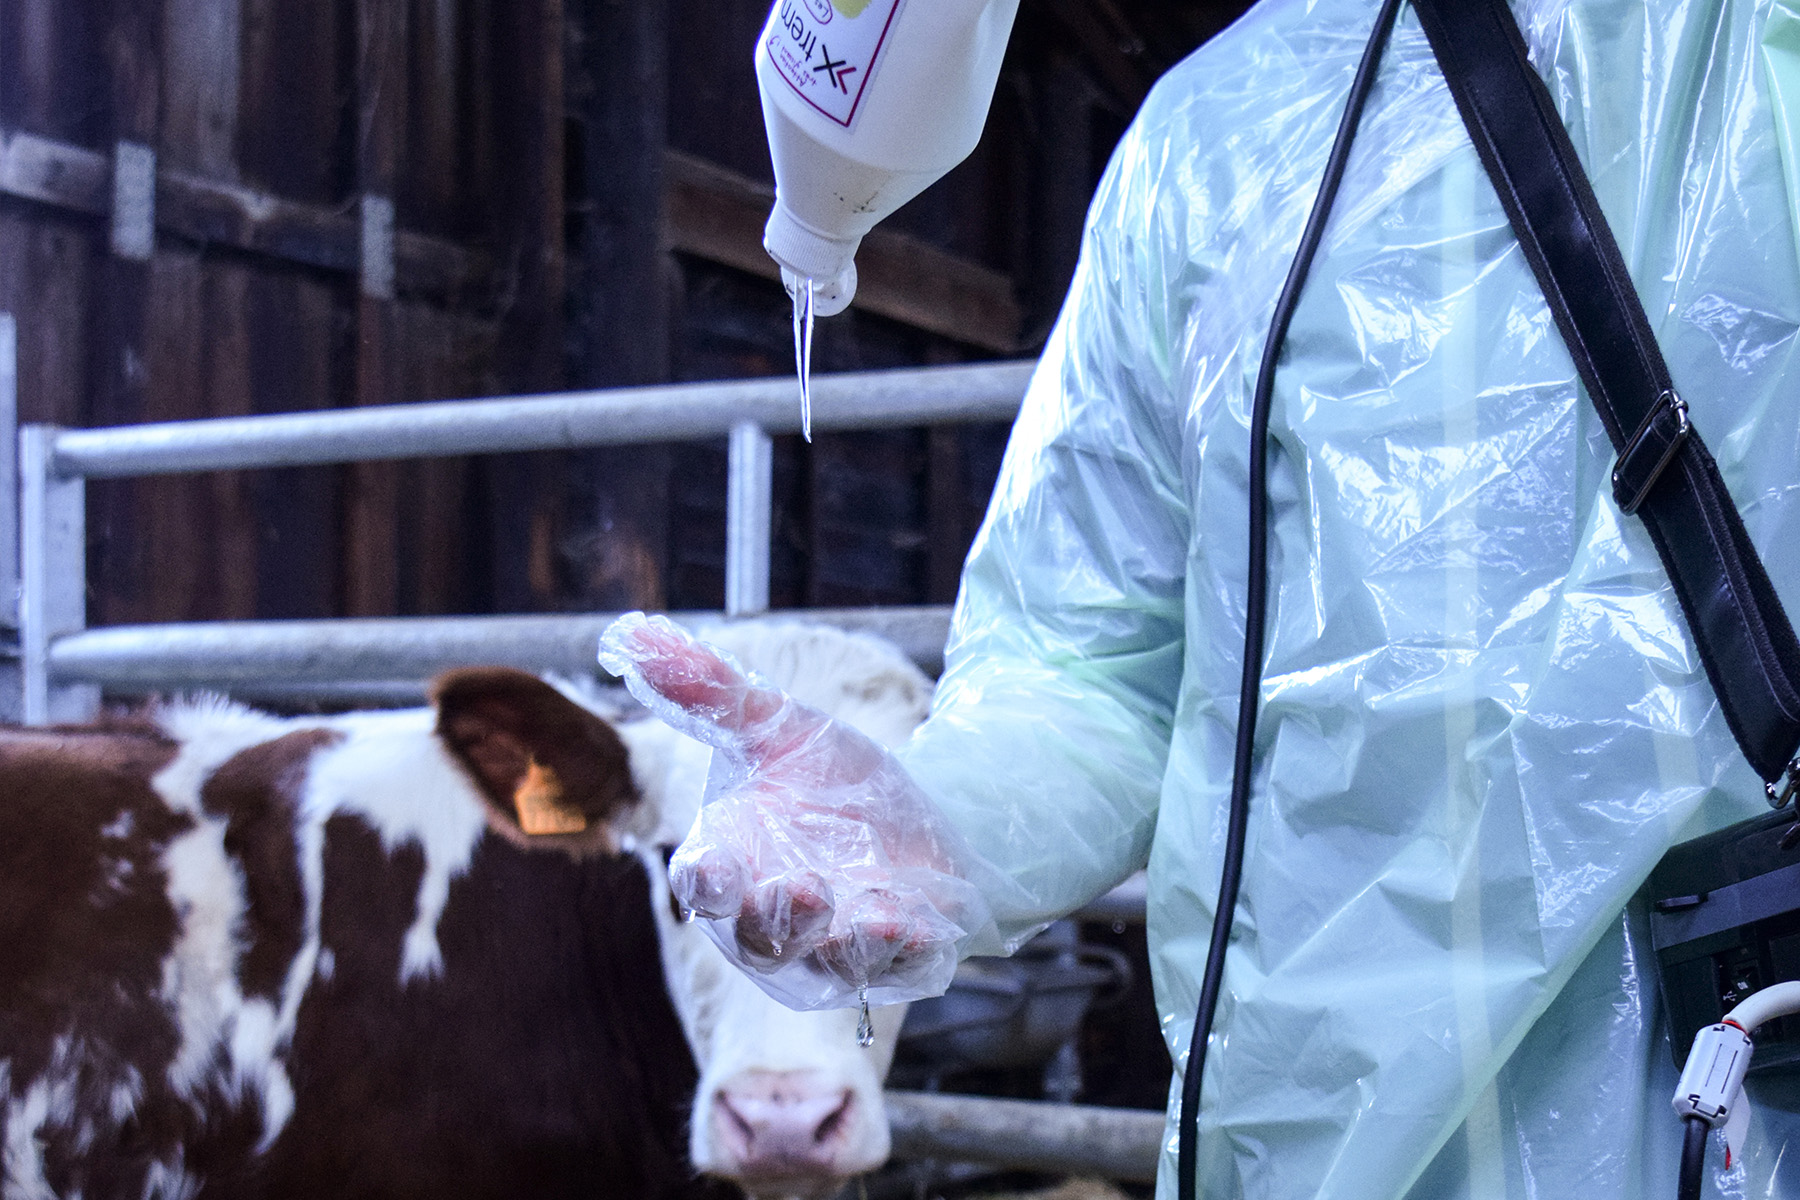 Technicien mettant du gel sur son gant avant d'échographier une vache dans le fond de l'image